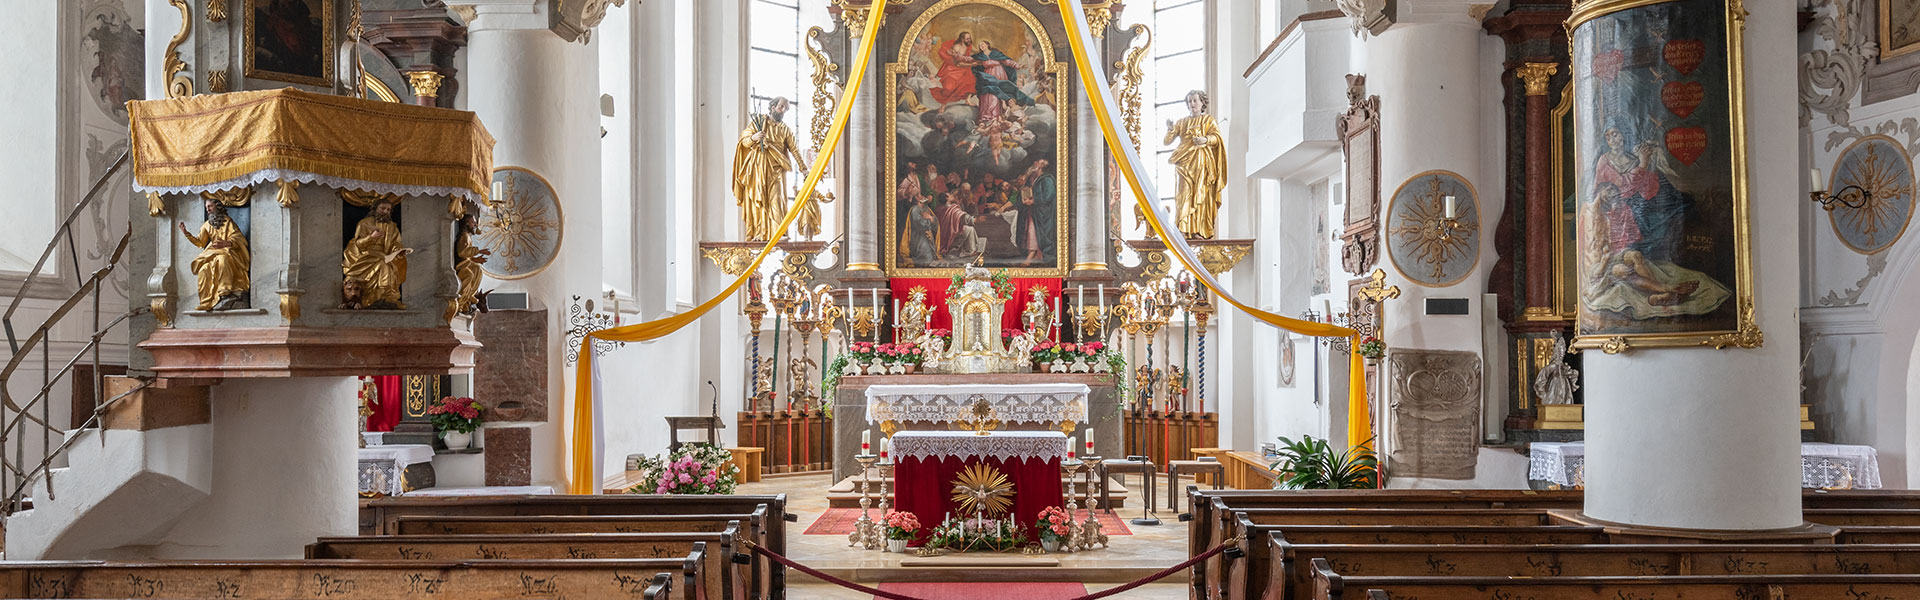 Altar Pfarrkirche Maria Himmelfahrt Grassau